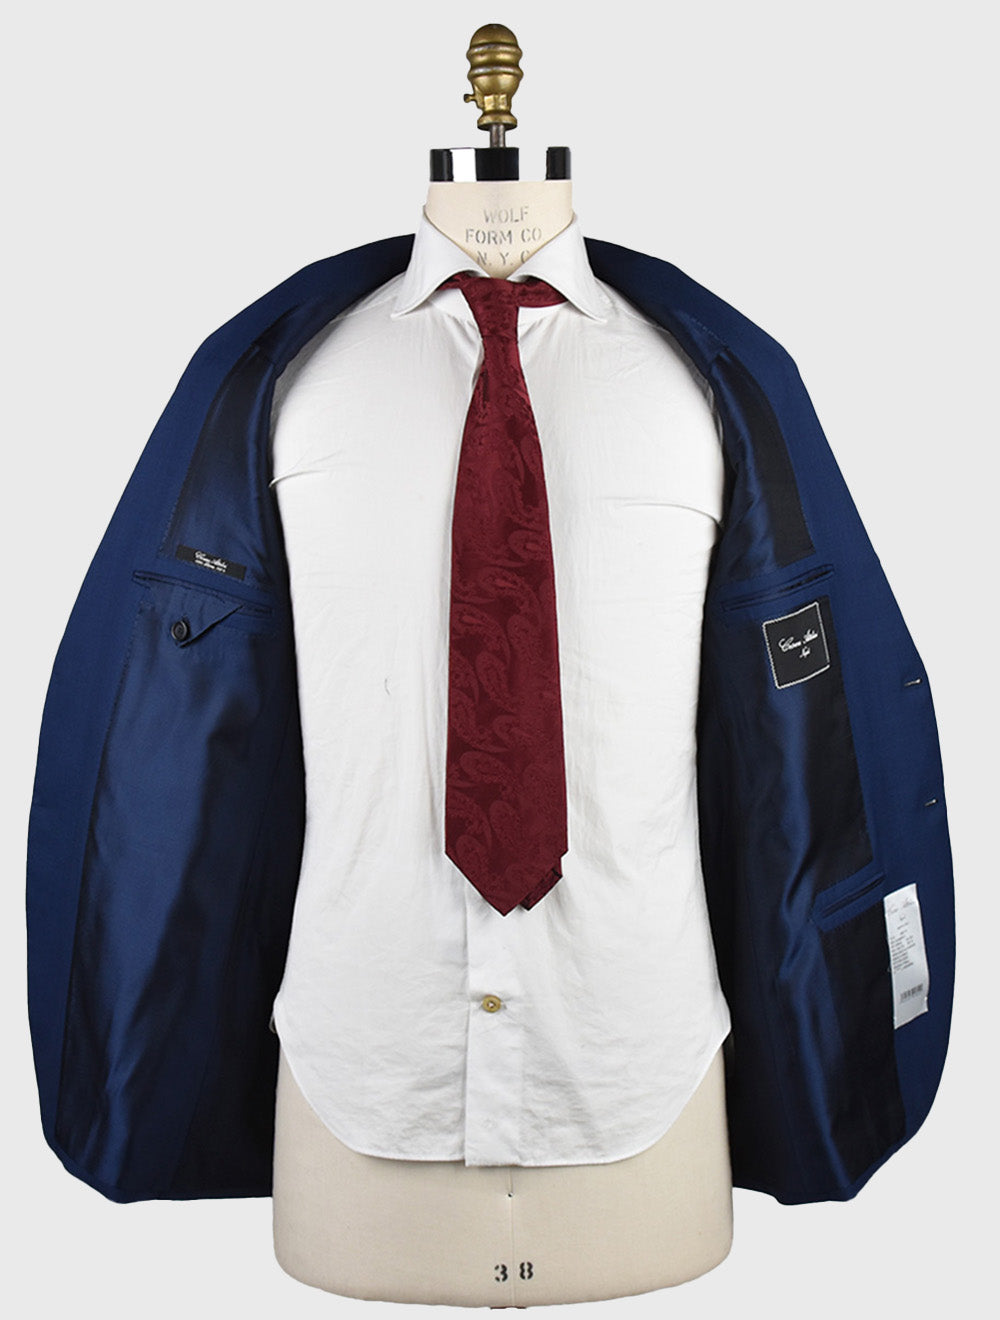 Cesare Attolini Blue Wool 150'S Suit